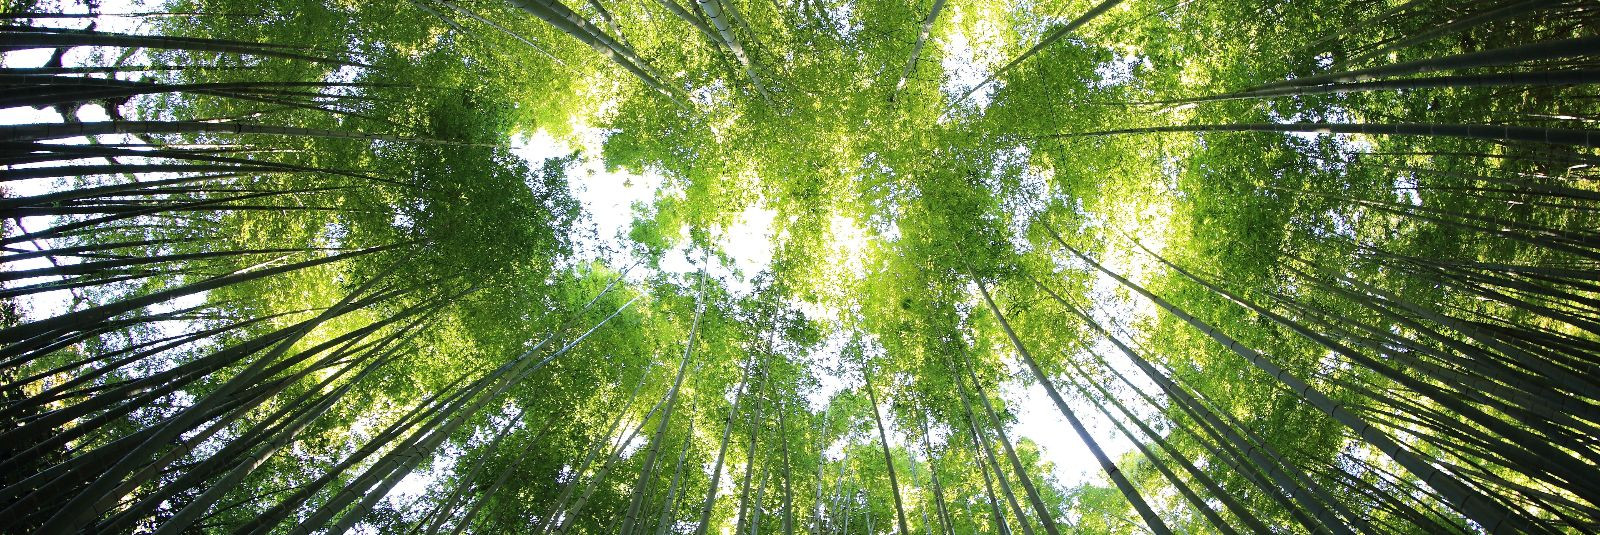 Metsade jätkusuutlikkus on üks olulisemaid teemasid tänapäeva maailmas. Me kõik oleme kuulnud metsade raiumisest, metsade hävimisest ja sellest, kuidas see mõju